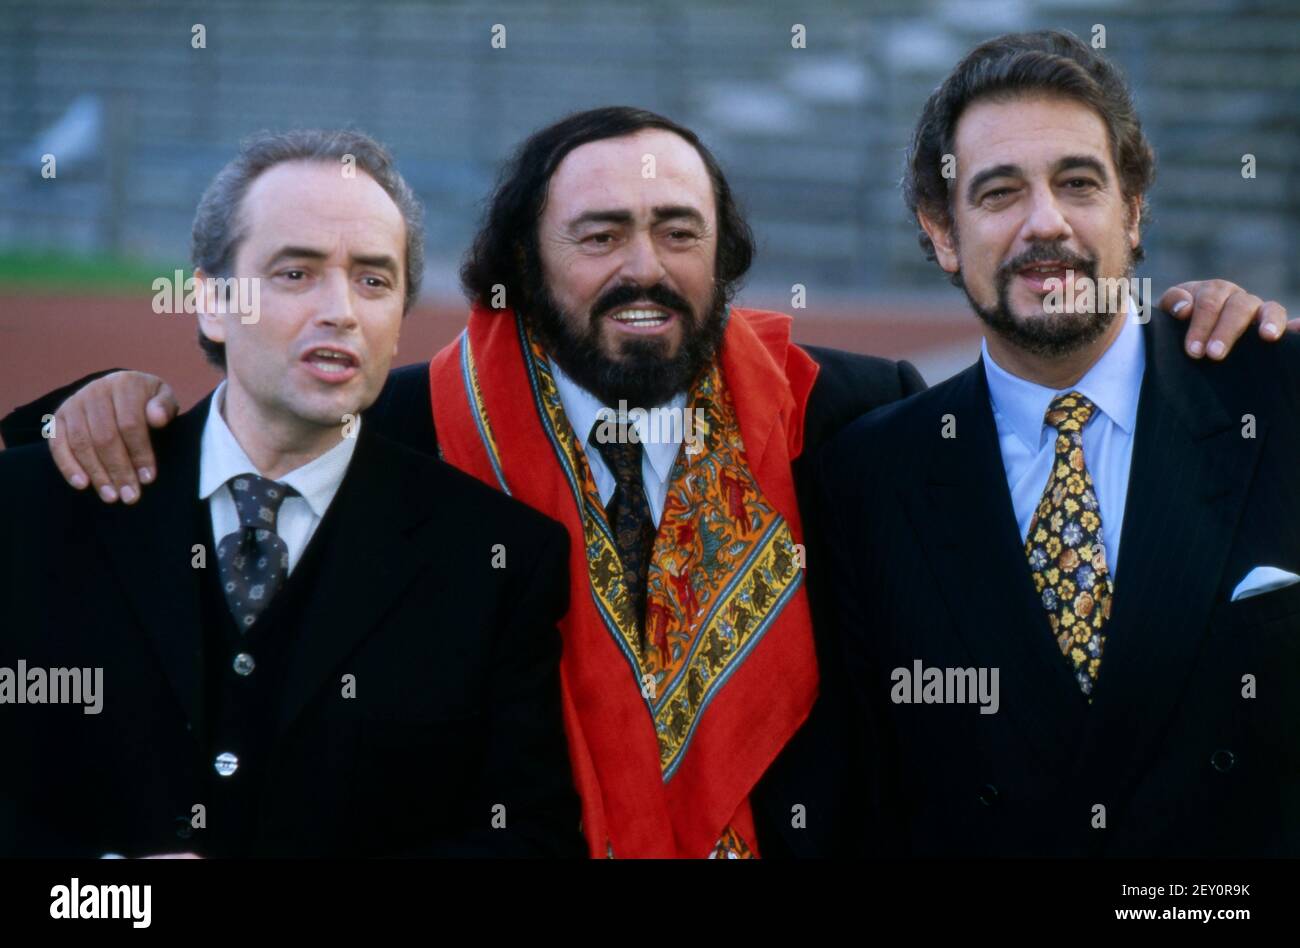 DIE DREI TENÖRE, 1995, Jose Carreras, Luciano Pavarotti, Placido Domingo. THE THREE TENORS, 1995, Spanish Tenor Jose Carreras, Italian Tenor Luciano Pavarotti and Spanish Tenor Placido Domingo. Stock Photo